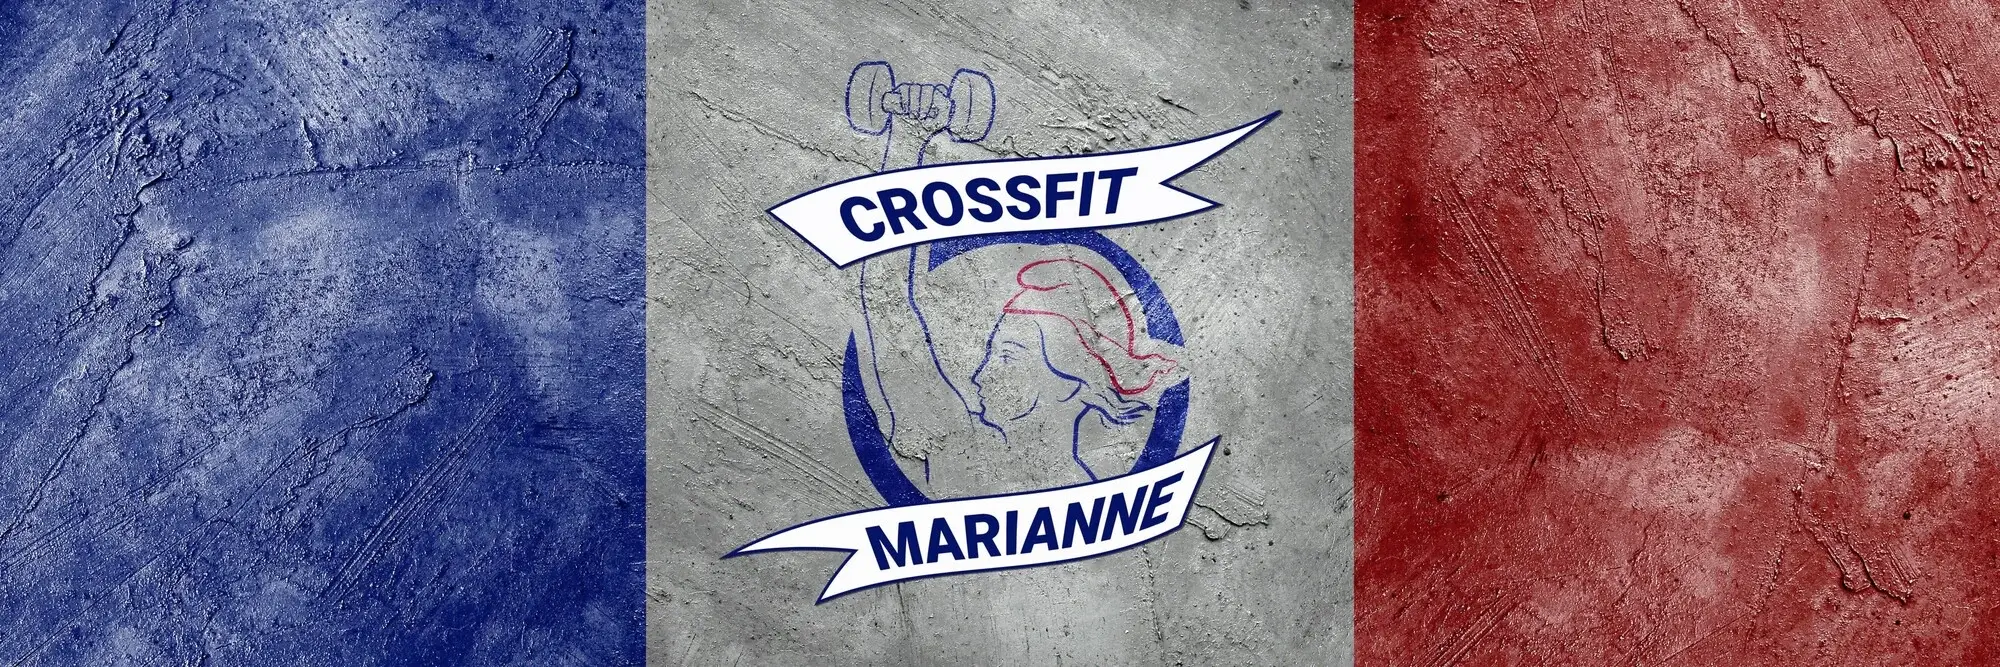 Crossfit Marianne